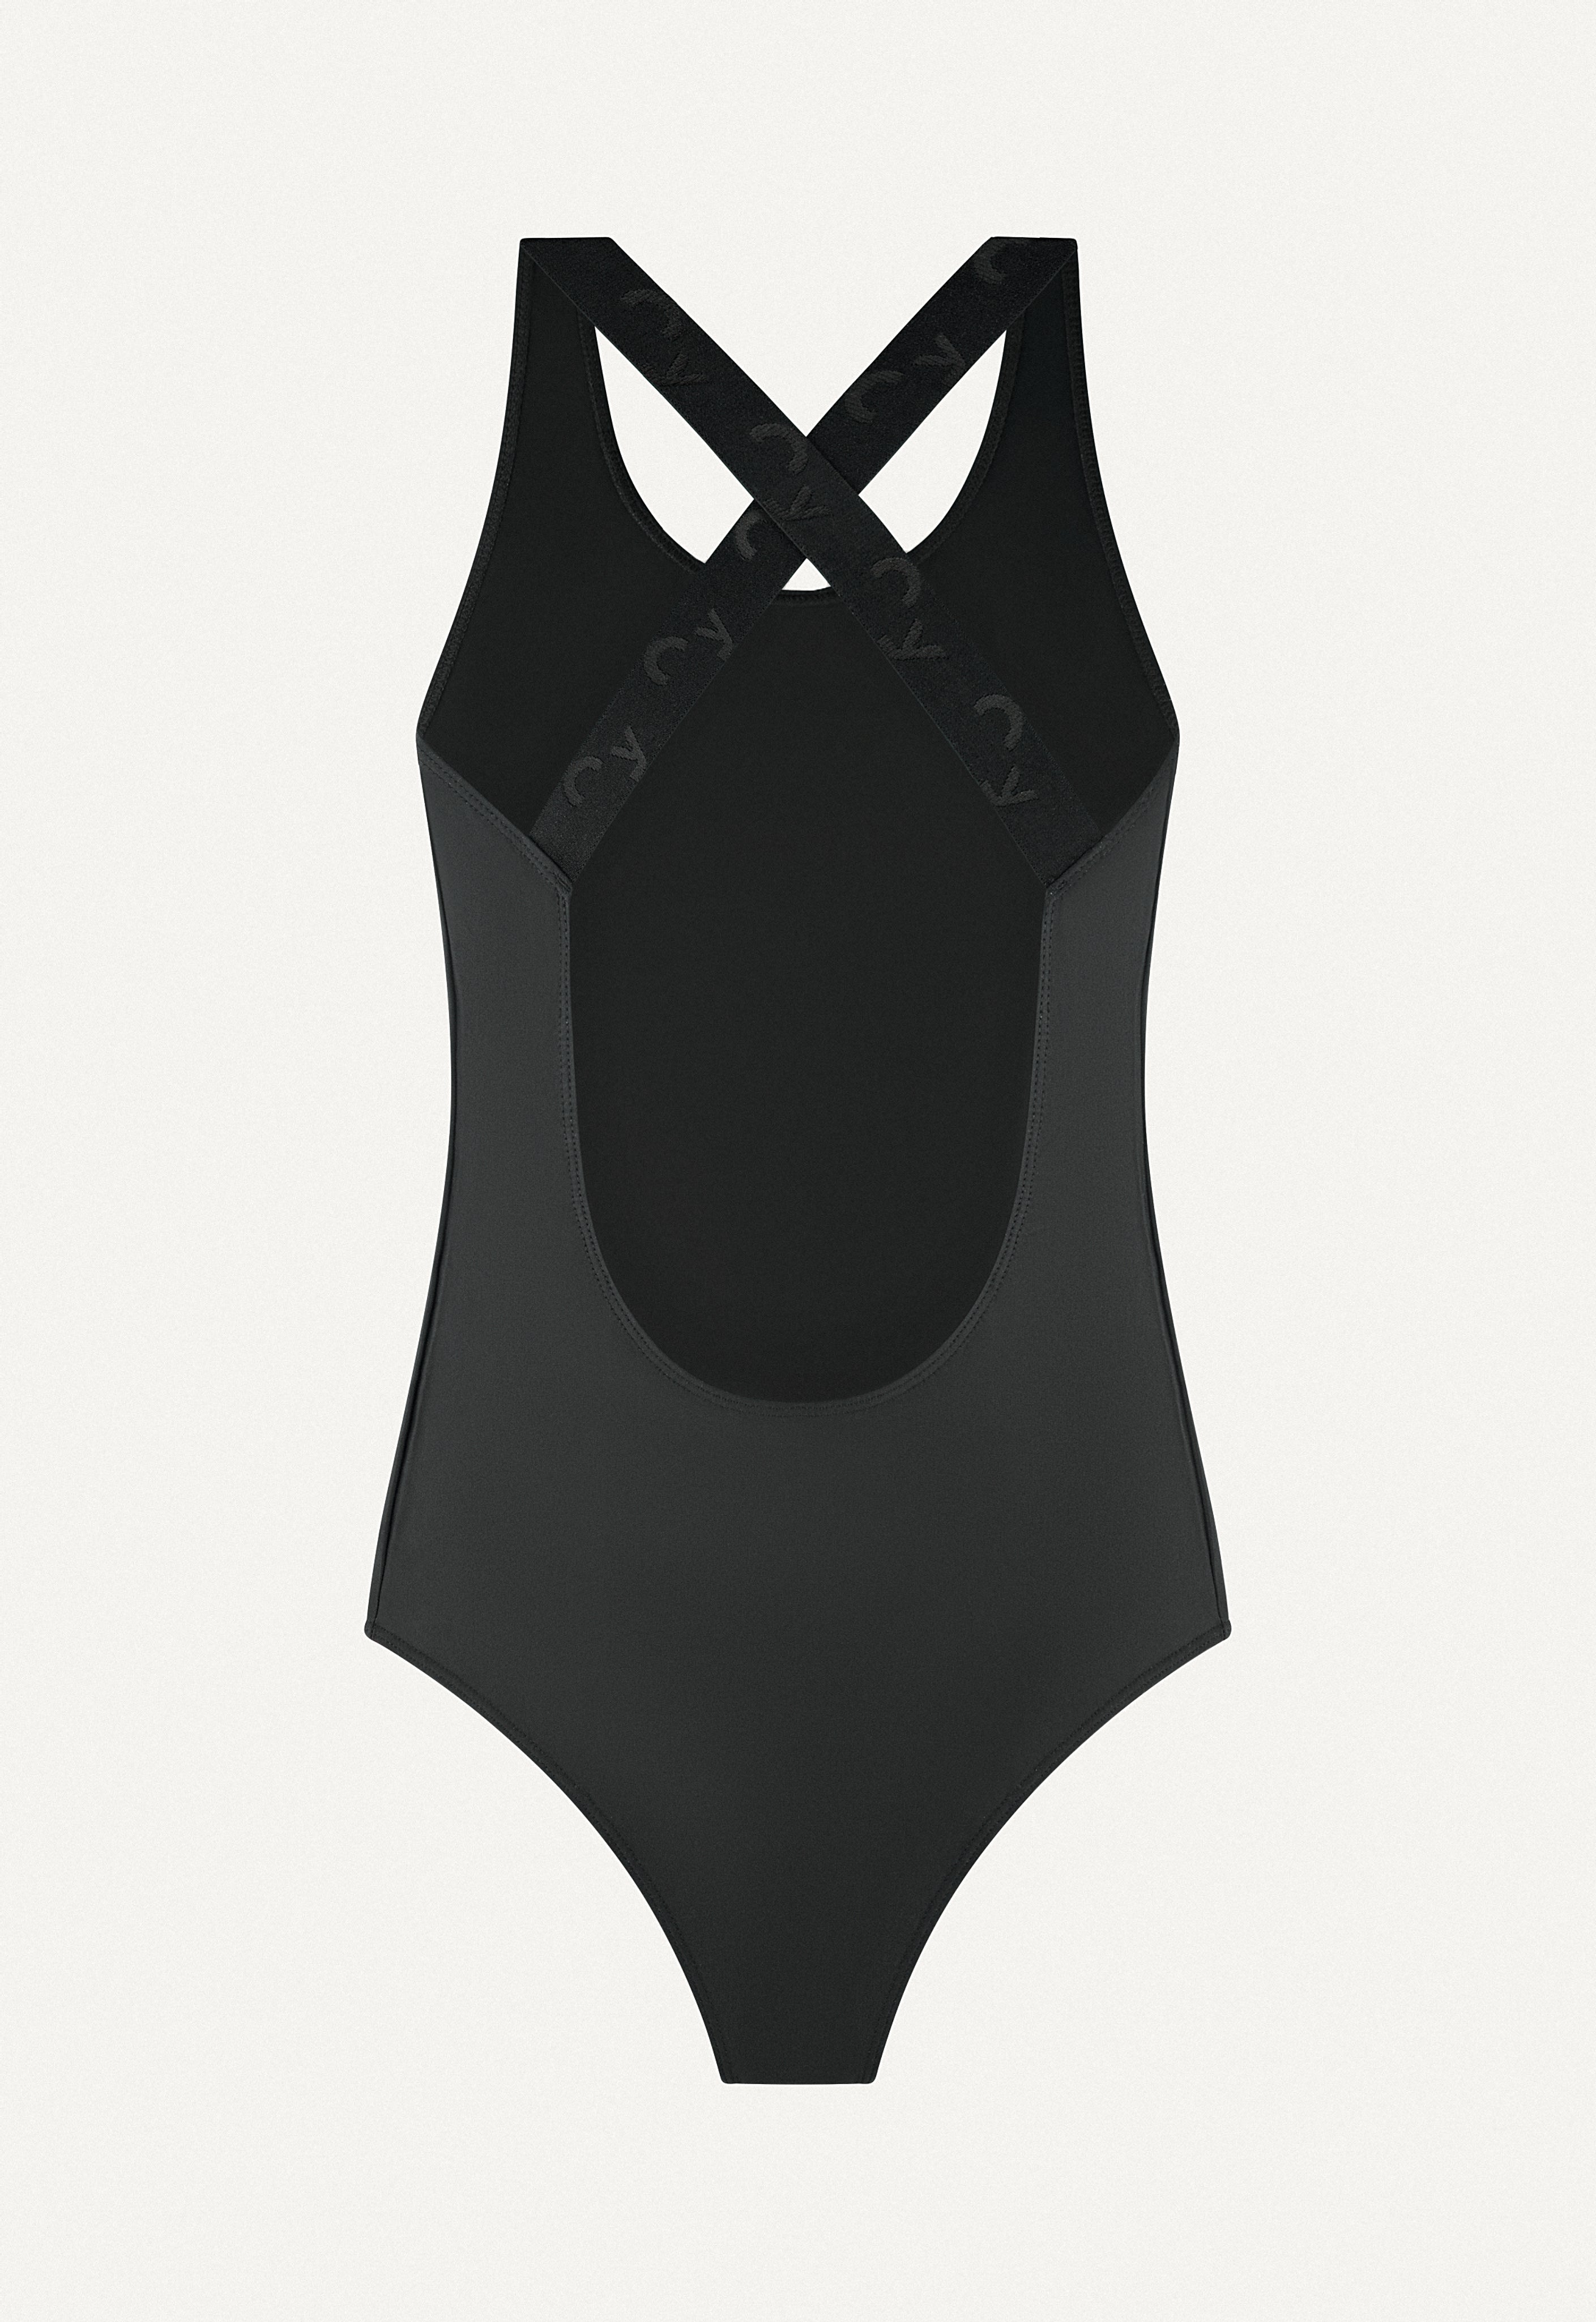 Oy-surf-swimsuit-Signatures-23-Kelt-ligt-black-2.jpg